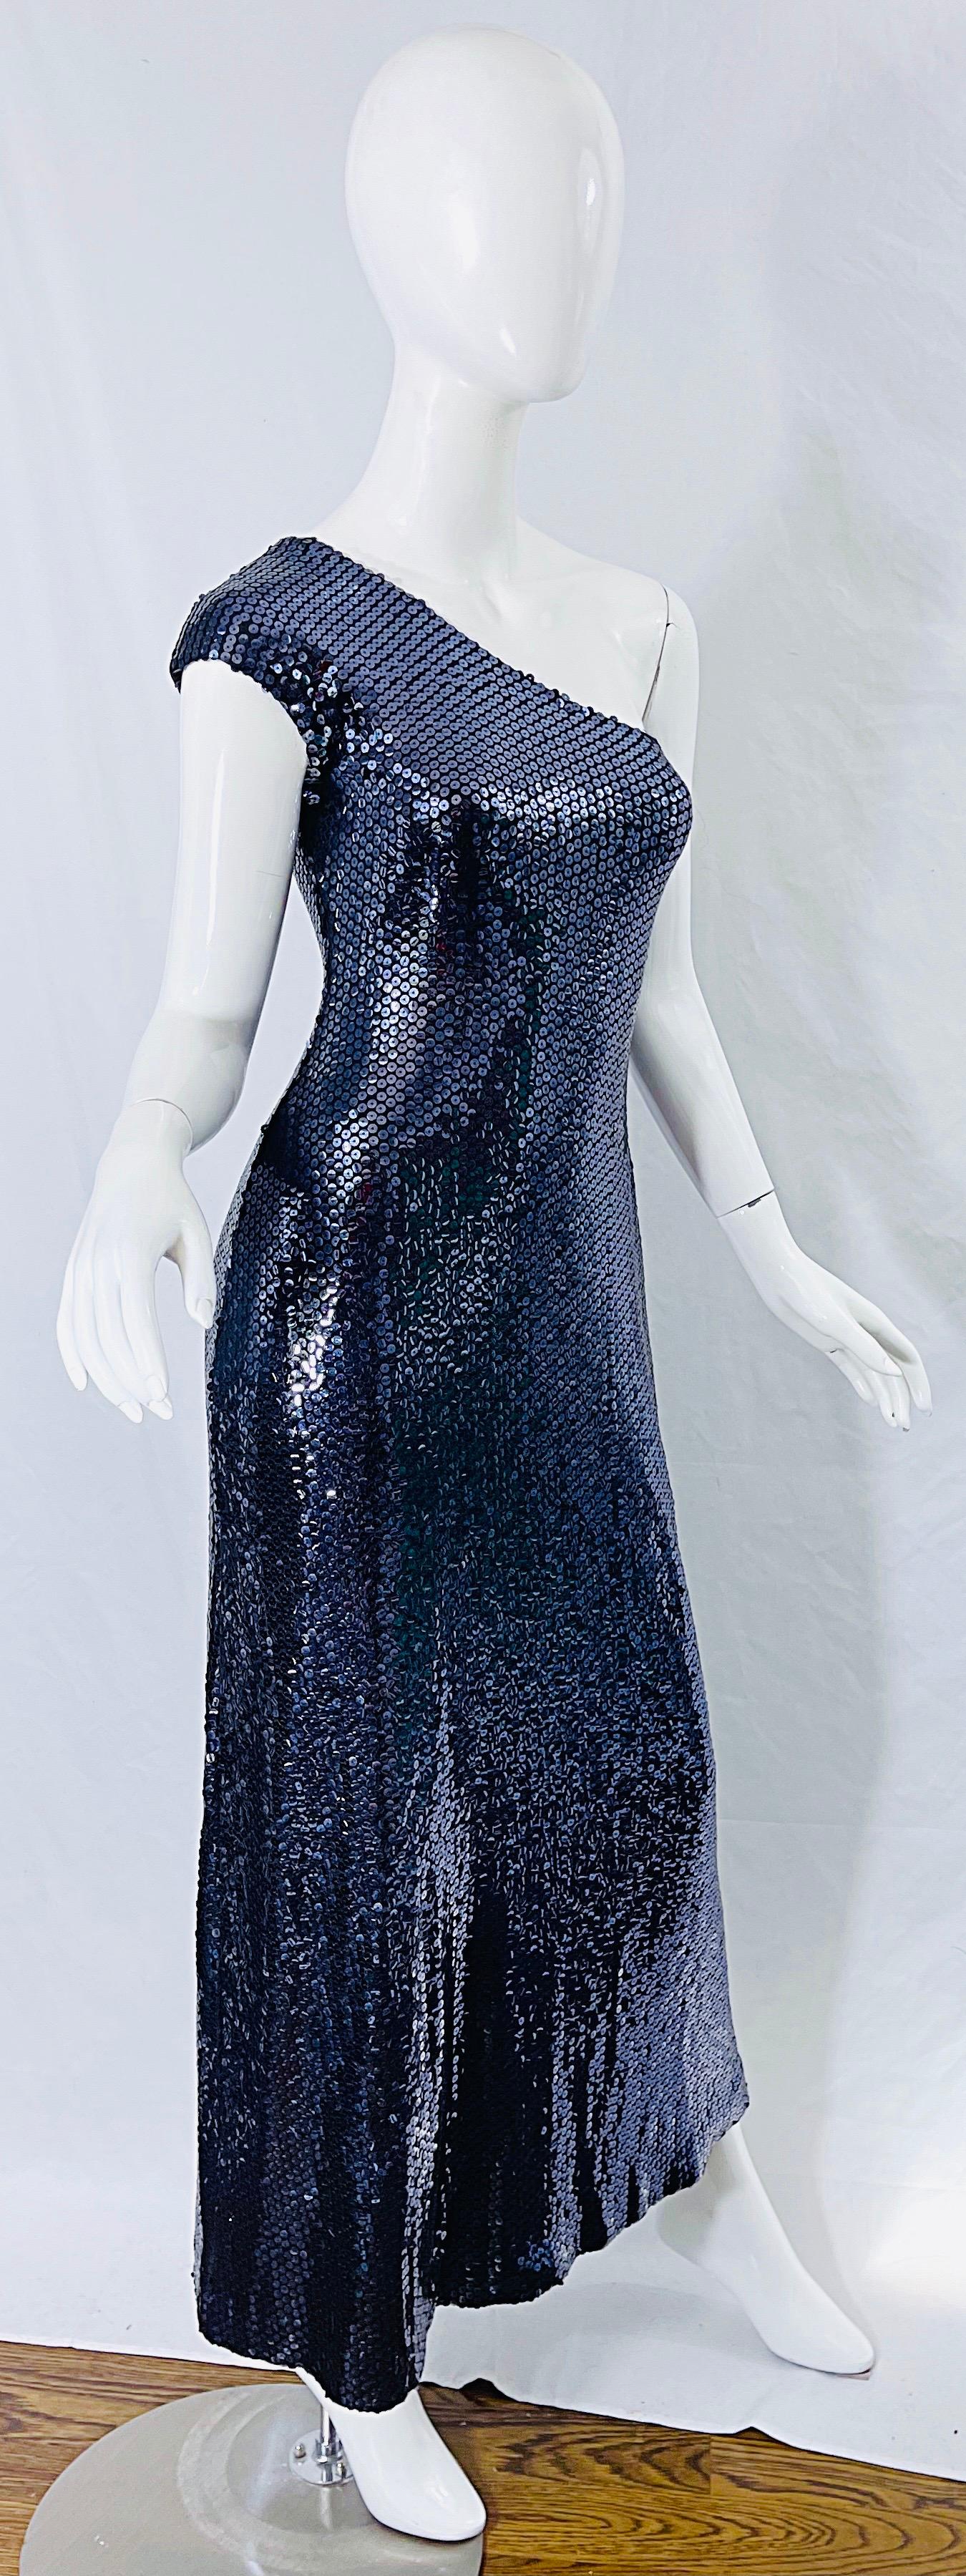 Halston 1970s Navy Blue Sequin One Shoulder Silk Jersey Vintage 70s Gown + Shawl 4